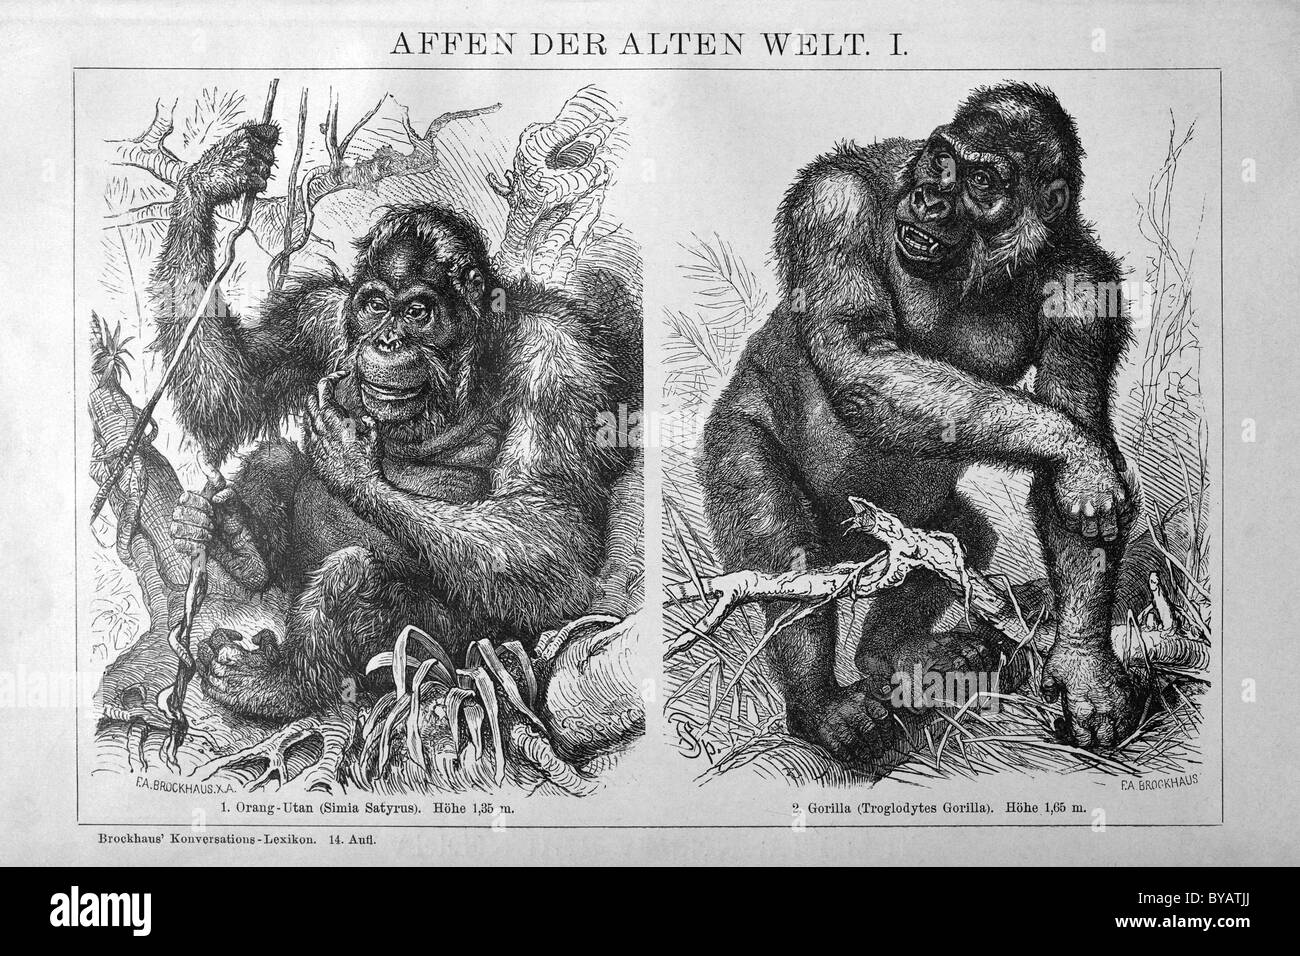 Image of an Orangutan (Simia satyrus) and a Gorilla (Troglodytes gorilla) next to each other, historical book illustration Stock Photo